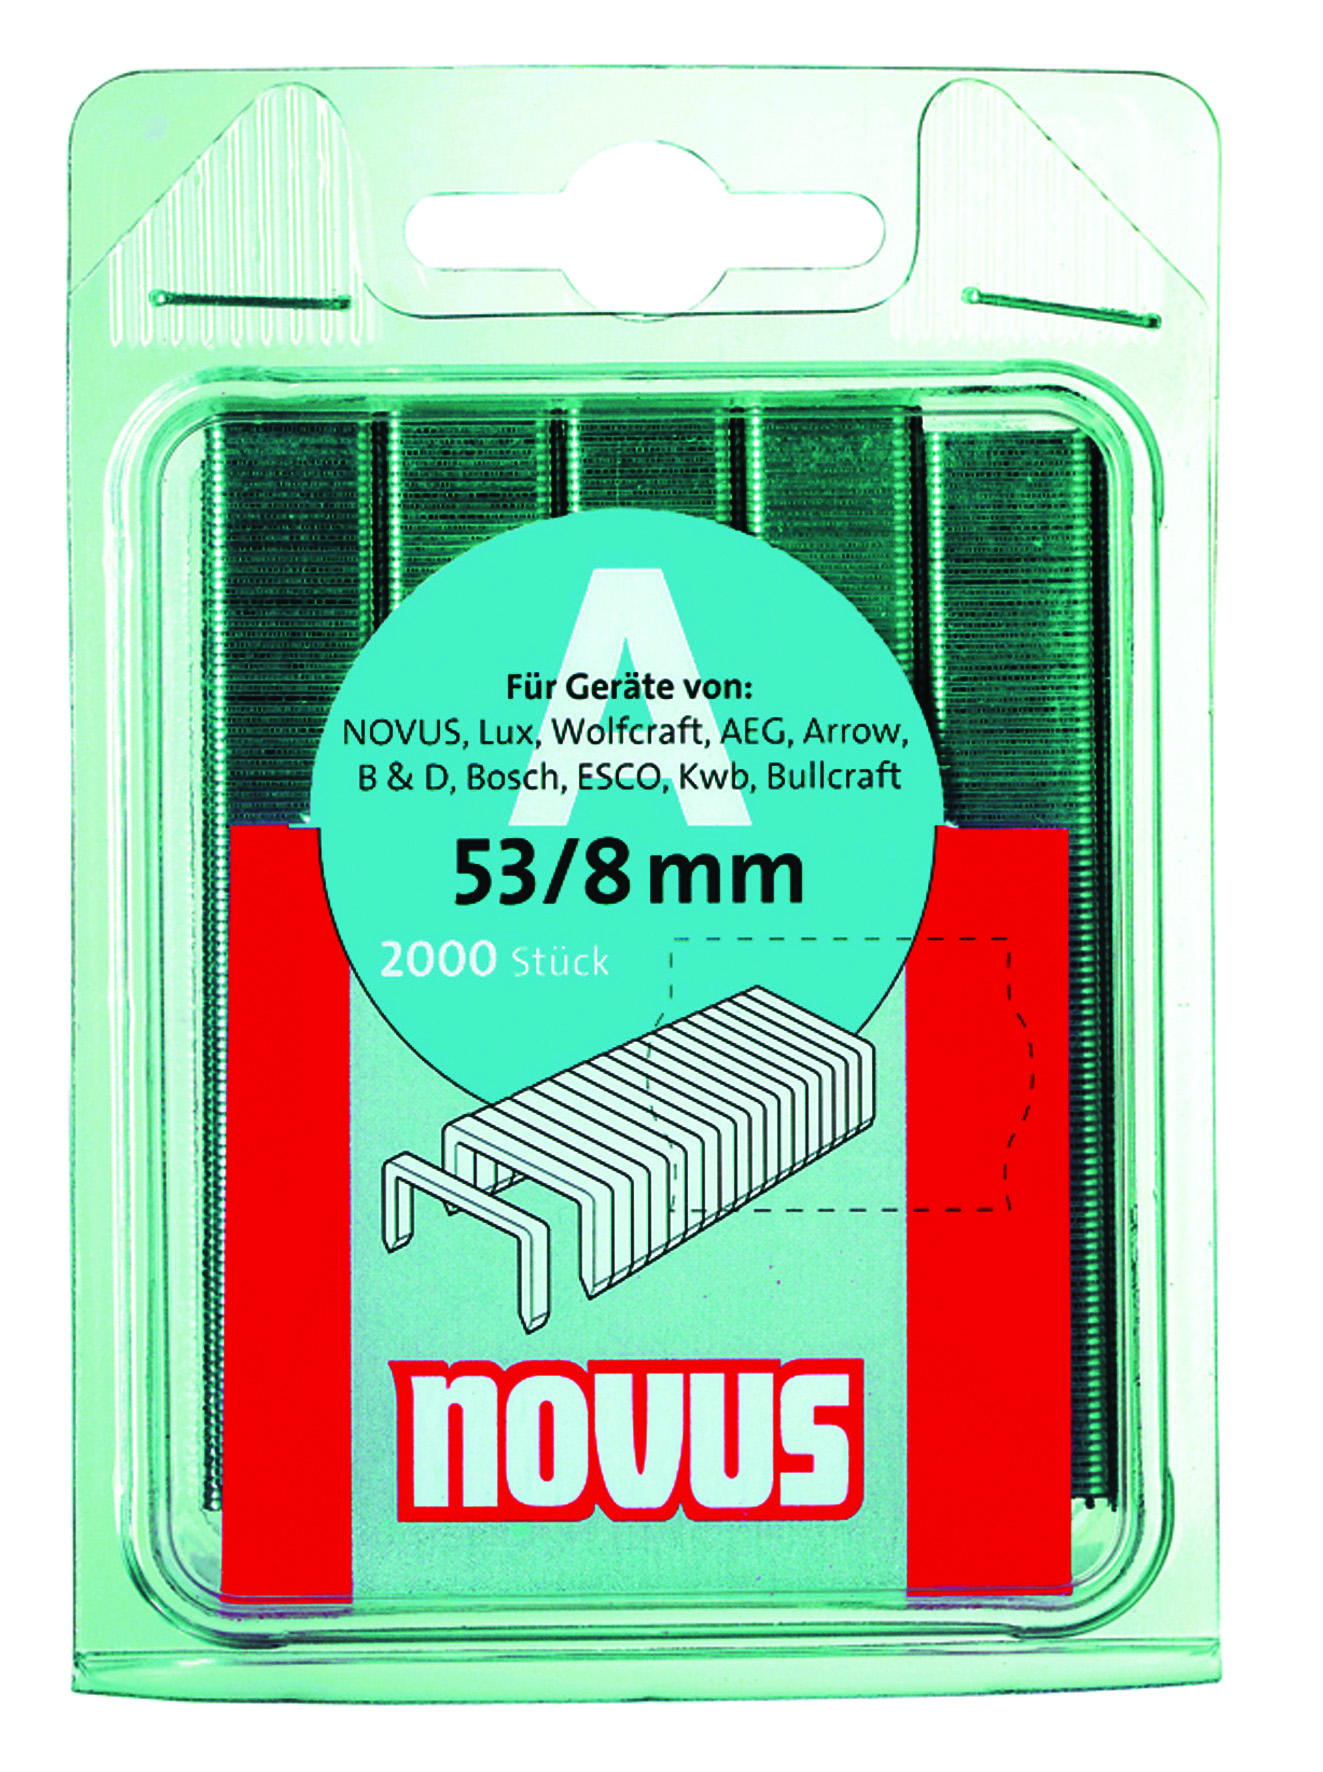 Novus dundraad nieten type A 53 2000 stuks 4 mm